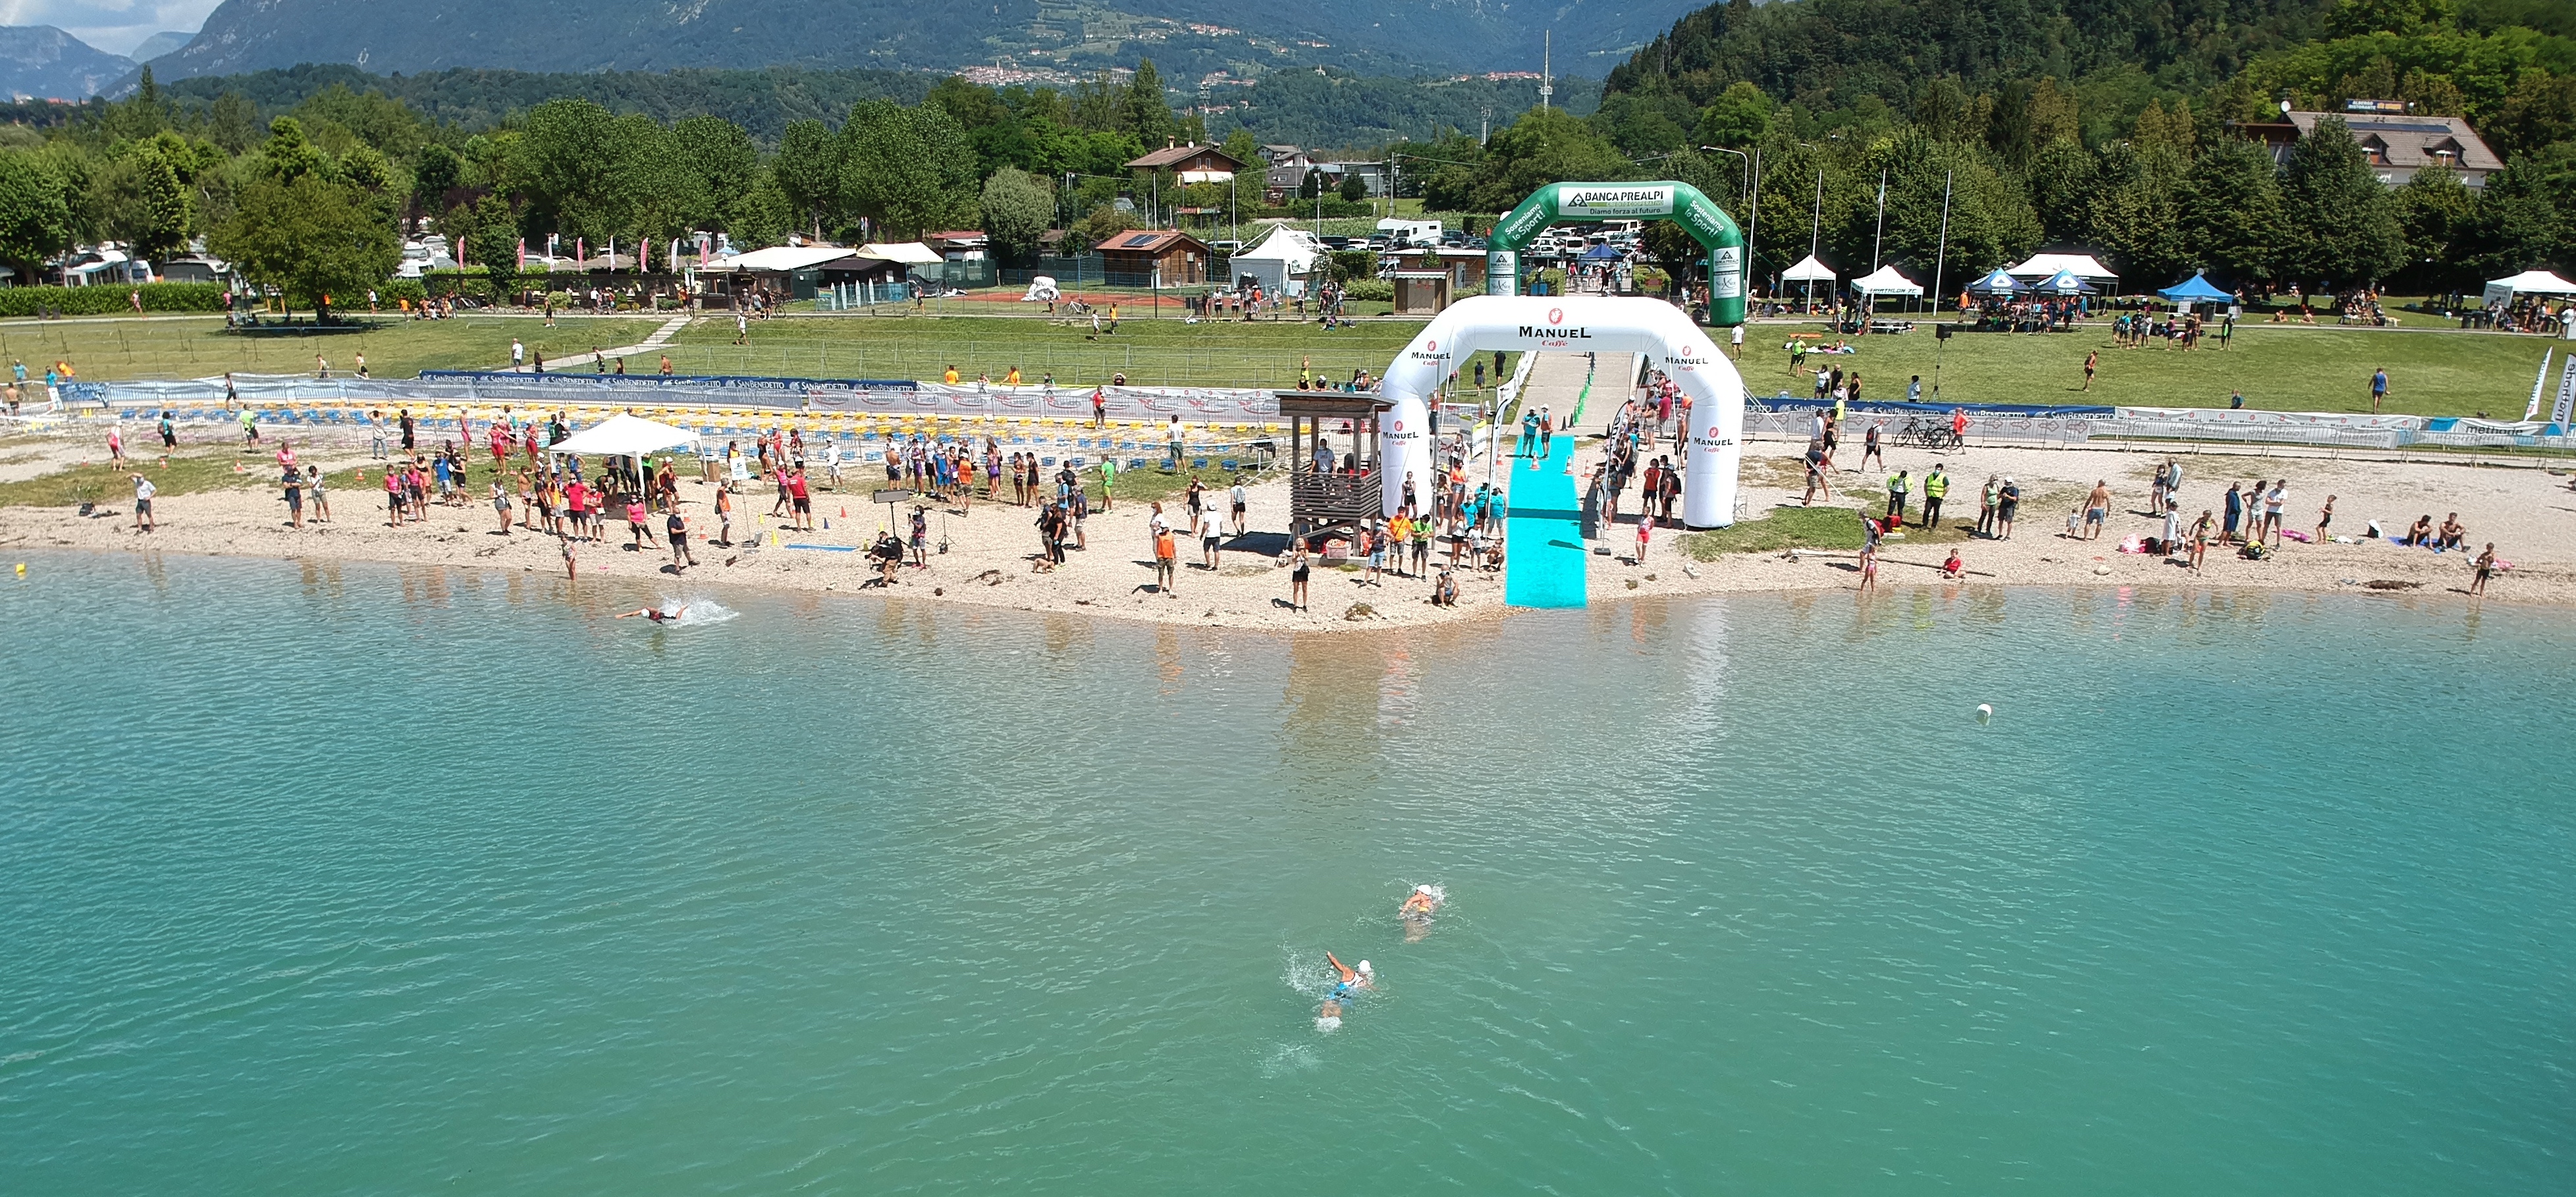 Il triathlon è ripartito: quasi 200 ragazzi in gara nell’Aquathlon Kids e Mini sul lago di S. Croce in Alpago 